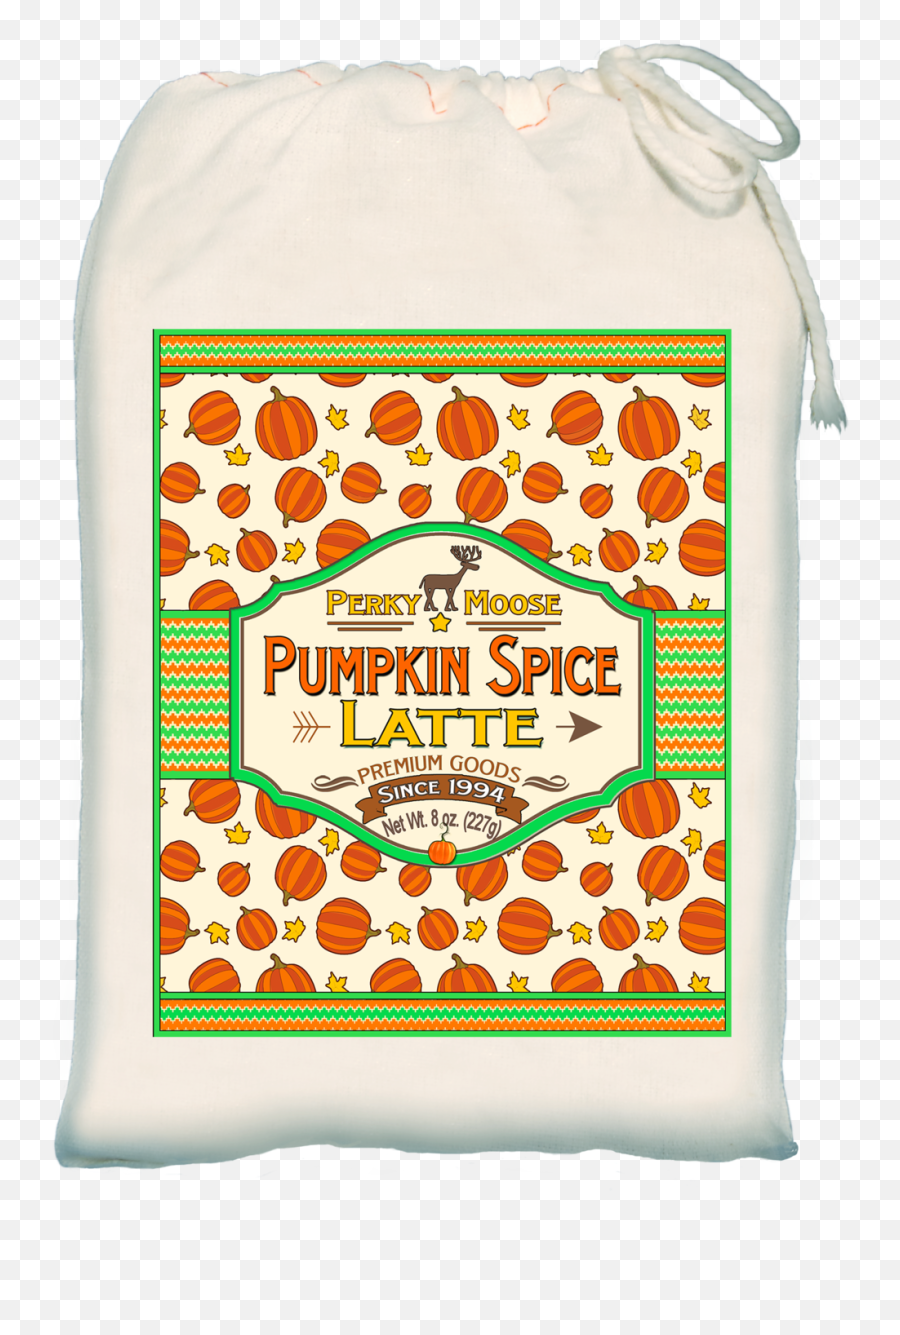 Download Pumpkin Spice Latte Png Image With No Background - Dot Emoji,Latte Emoji